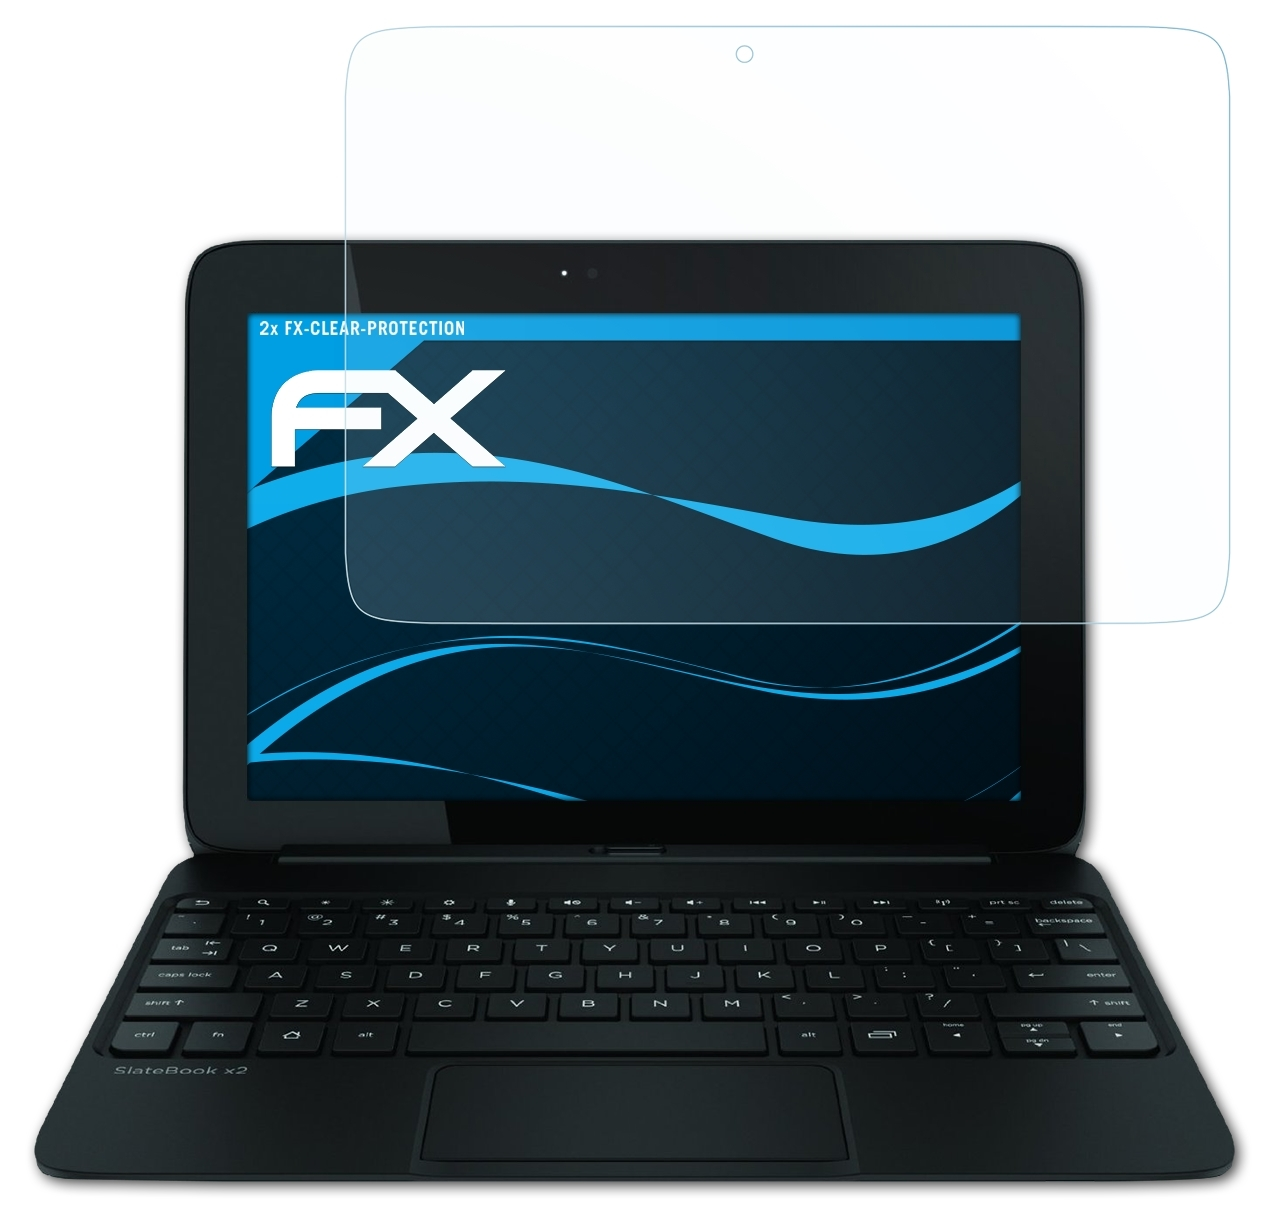 HP 10 ATFOLIX FX-Clear 2x SlateBook x2) Displayschutz(für